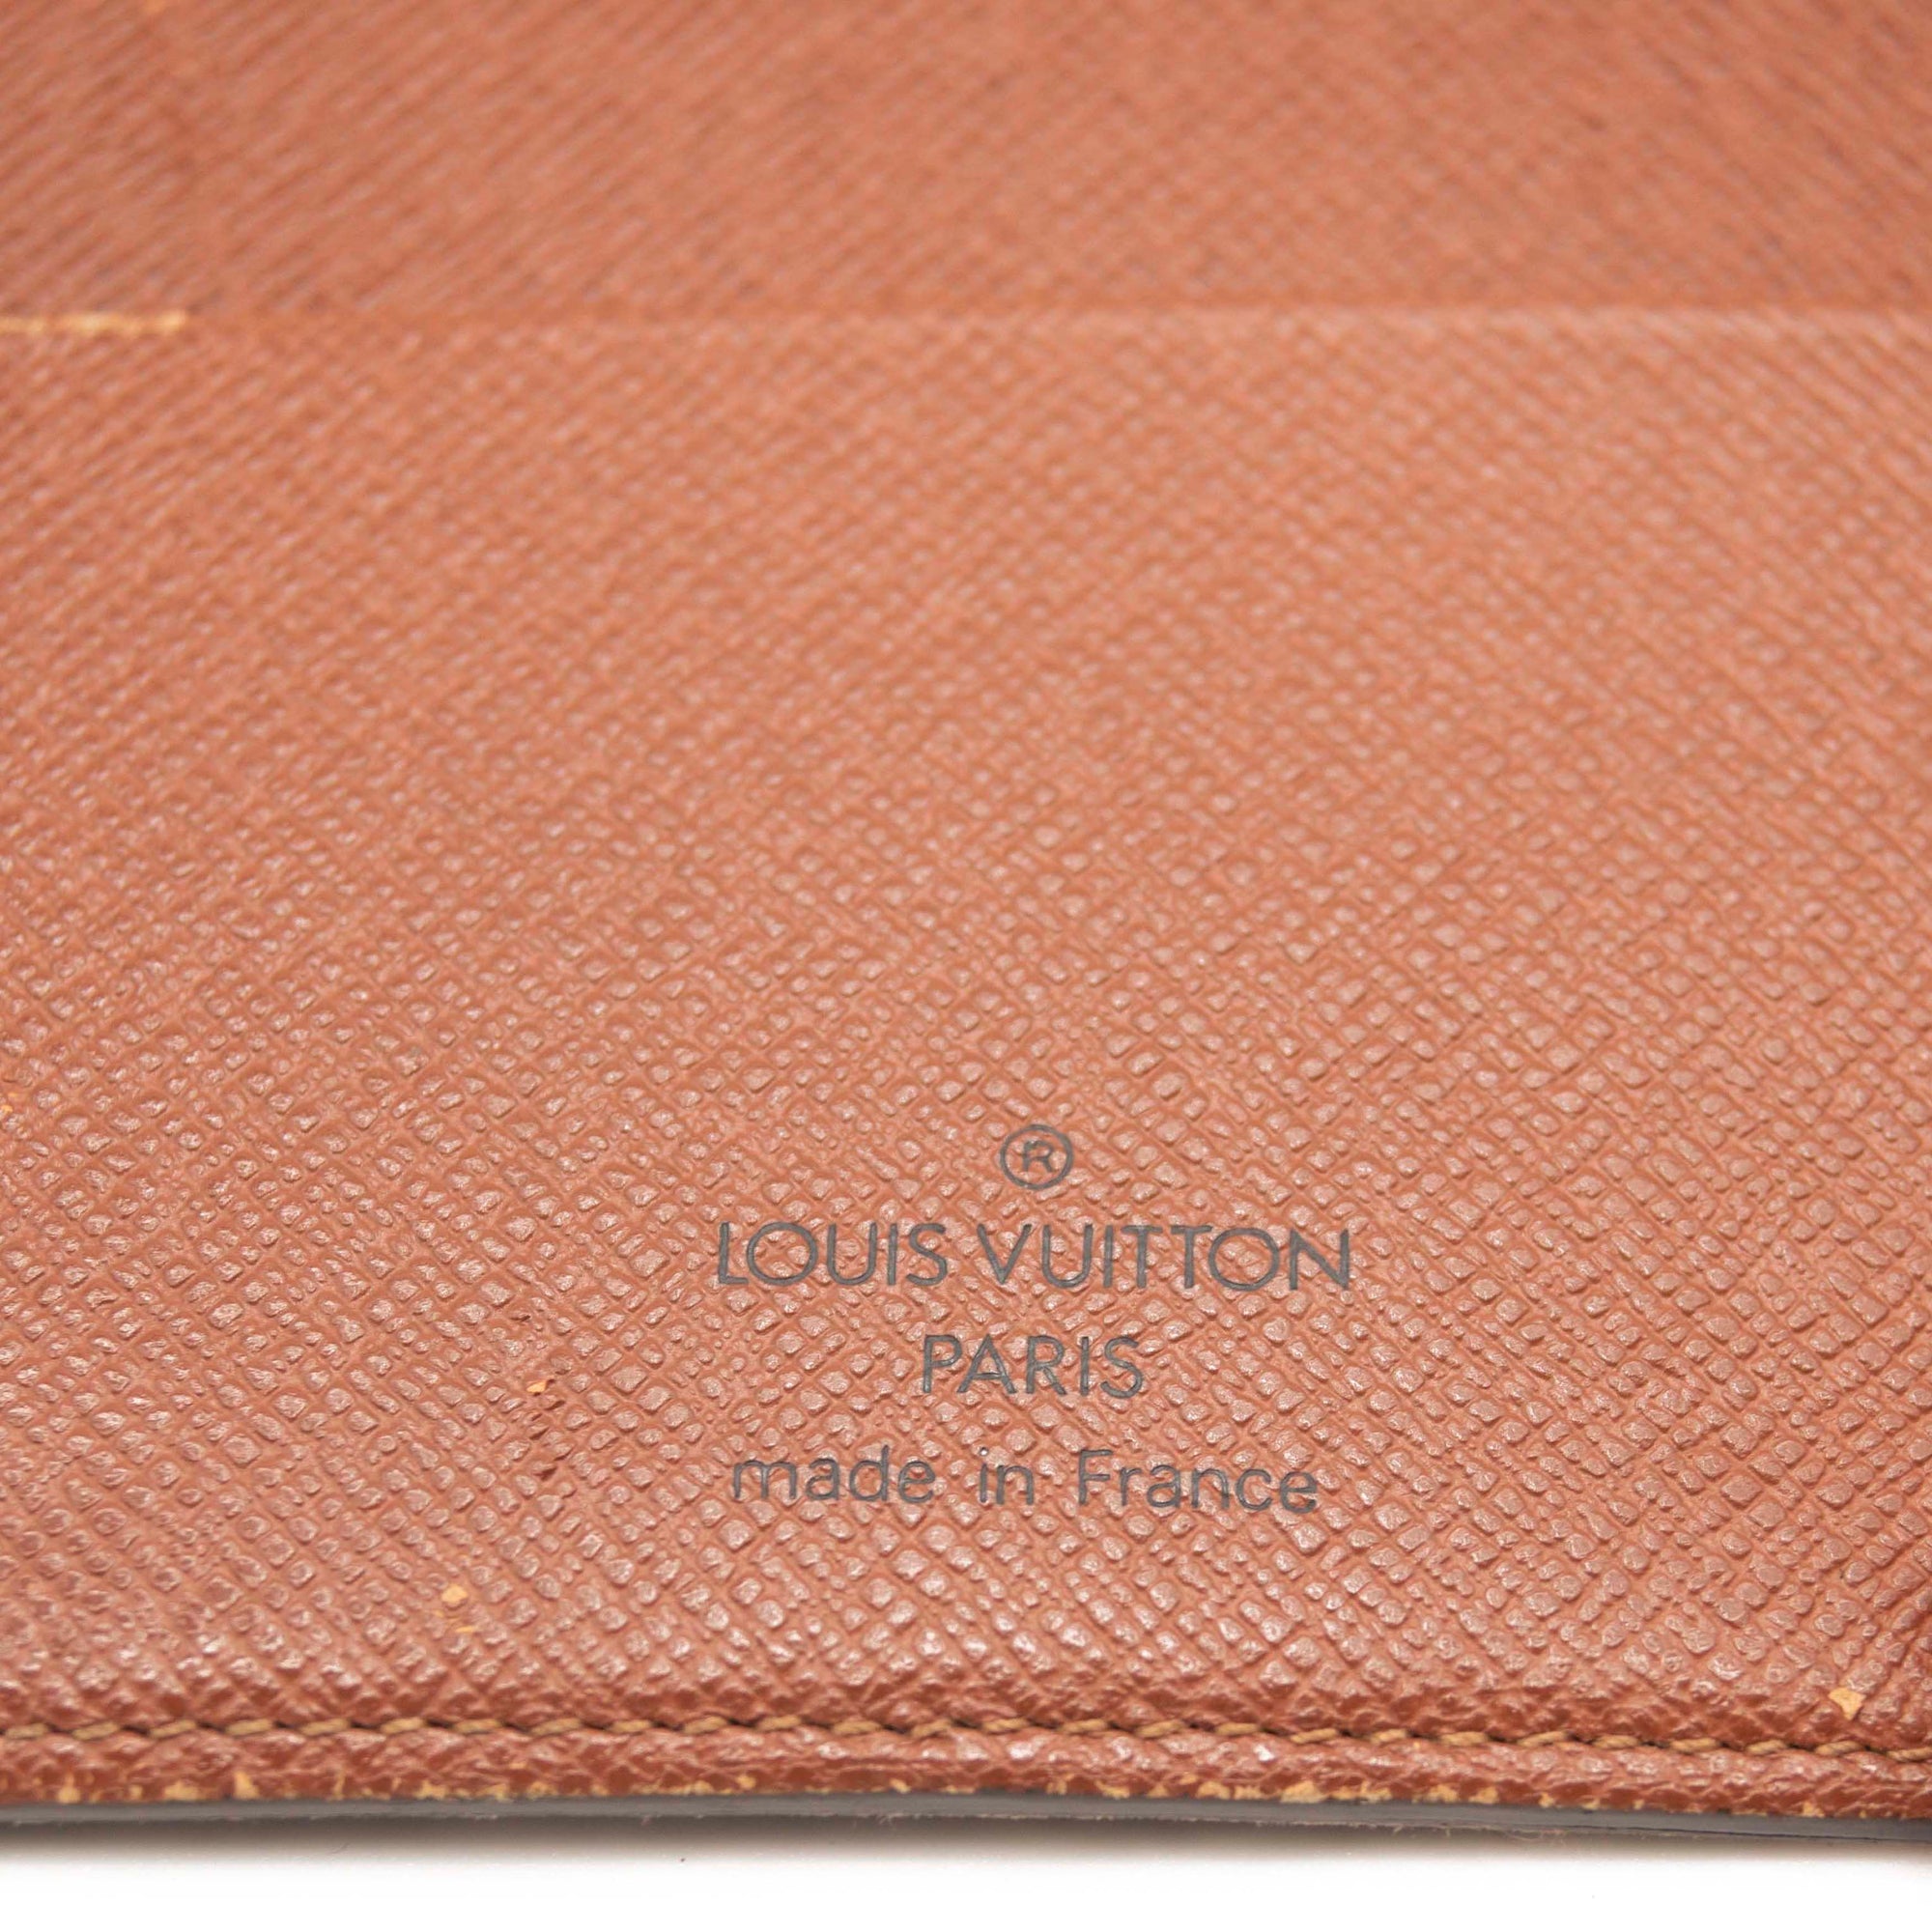 Louis Vuitton Monogram Medium Ring Agenda Cover - Louis Vuitton